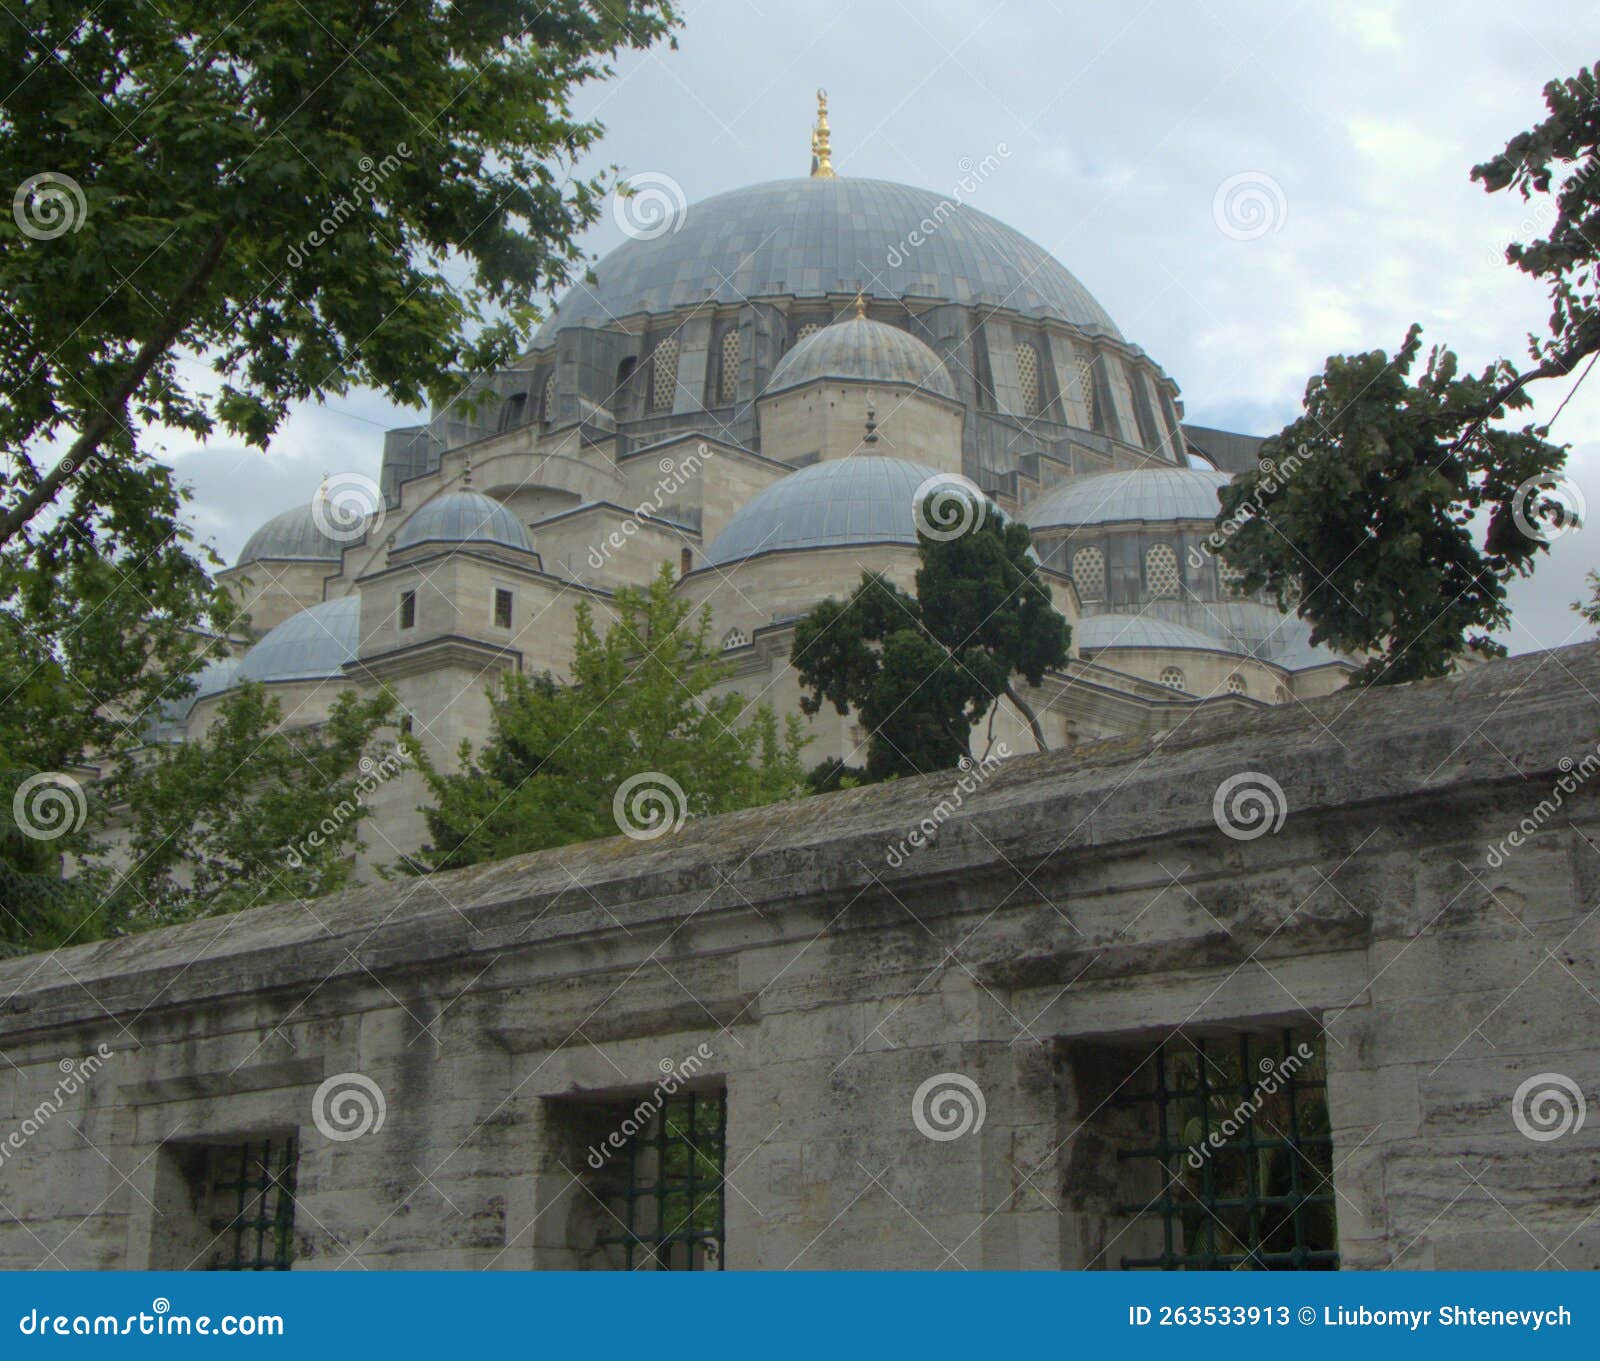 turkey, istanbul, 4 prof. siddik sami onar cd., suleymaniye mosque (suleymaniye camii, the main dome of the mosque